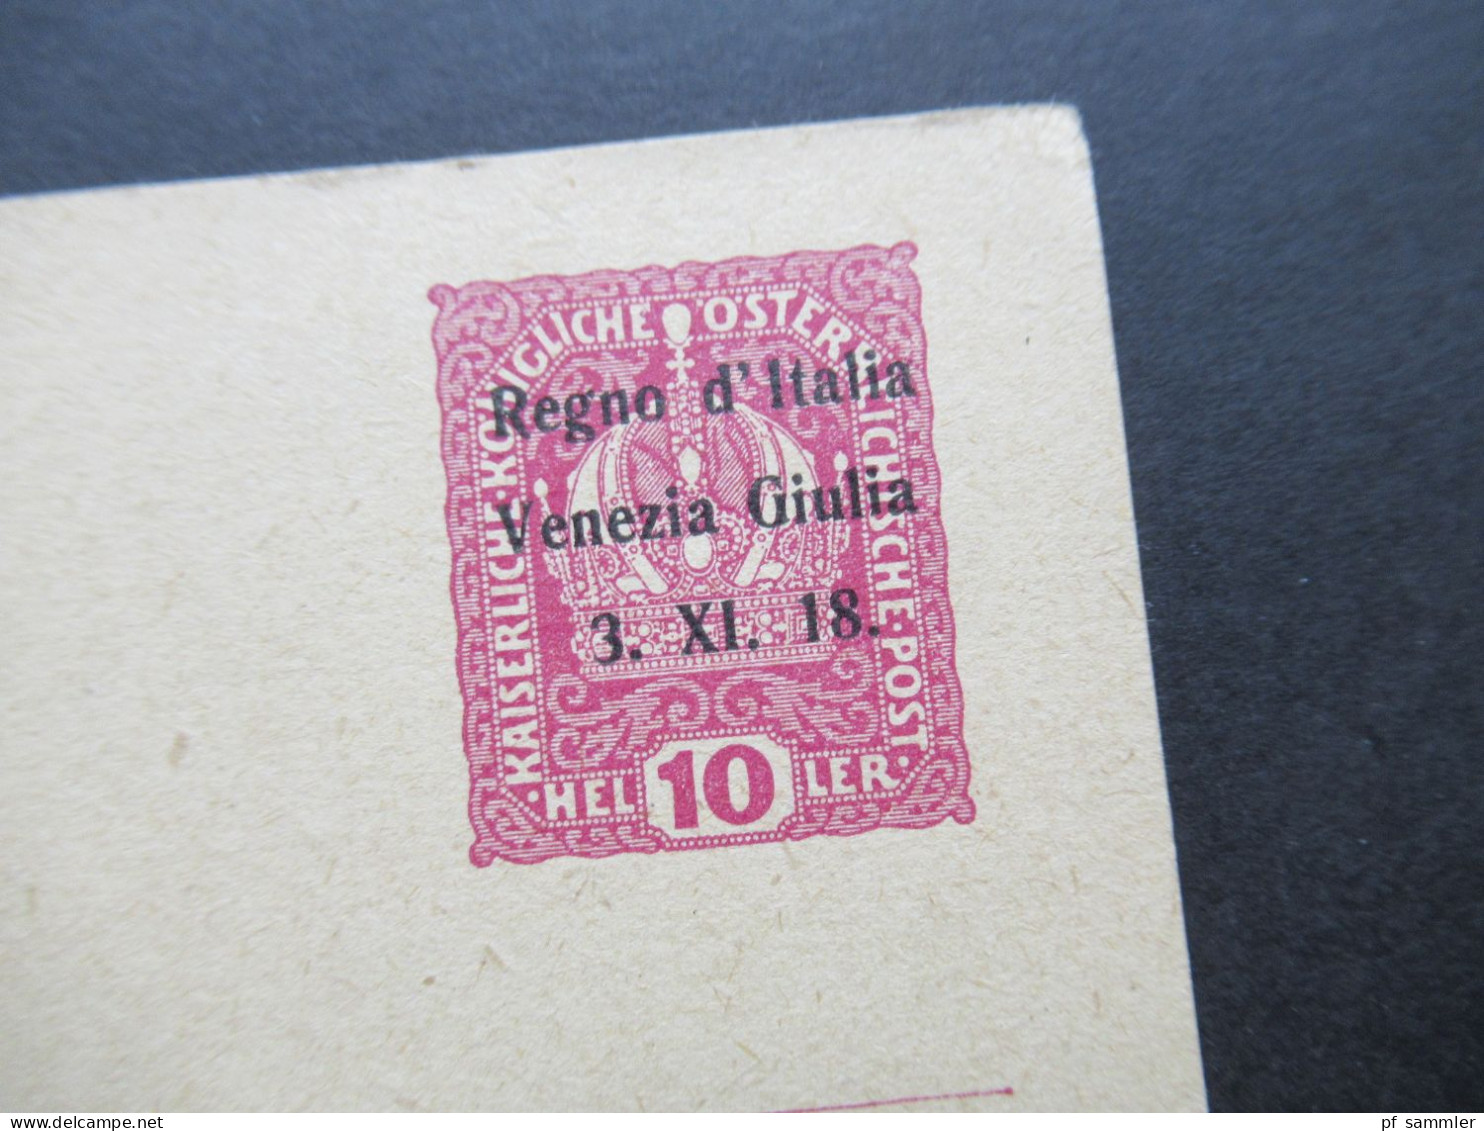 Italien 1918 Österreichische Postkarte Kaiserkrone Mit Aufdruck Regno D'Italia Venezia Giulia / Julisch Venetien - European And Asian Offices